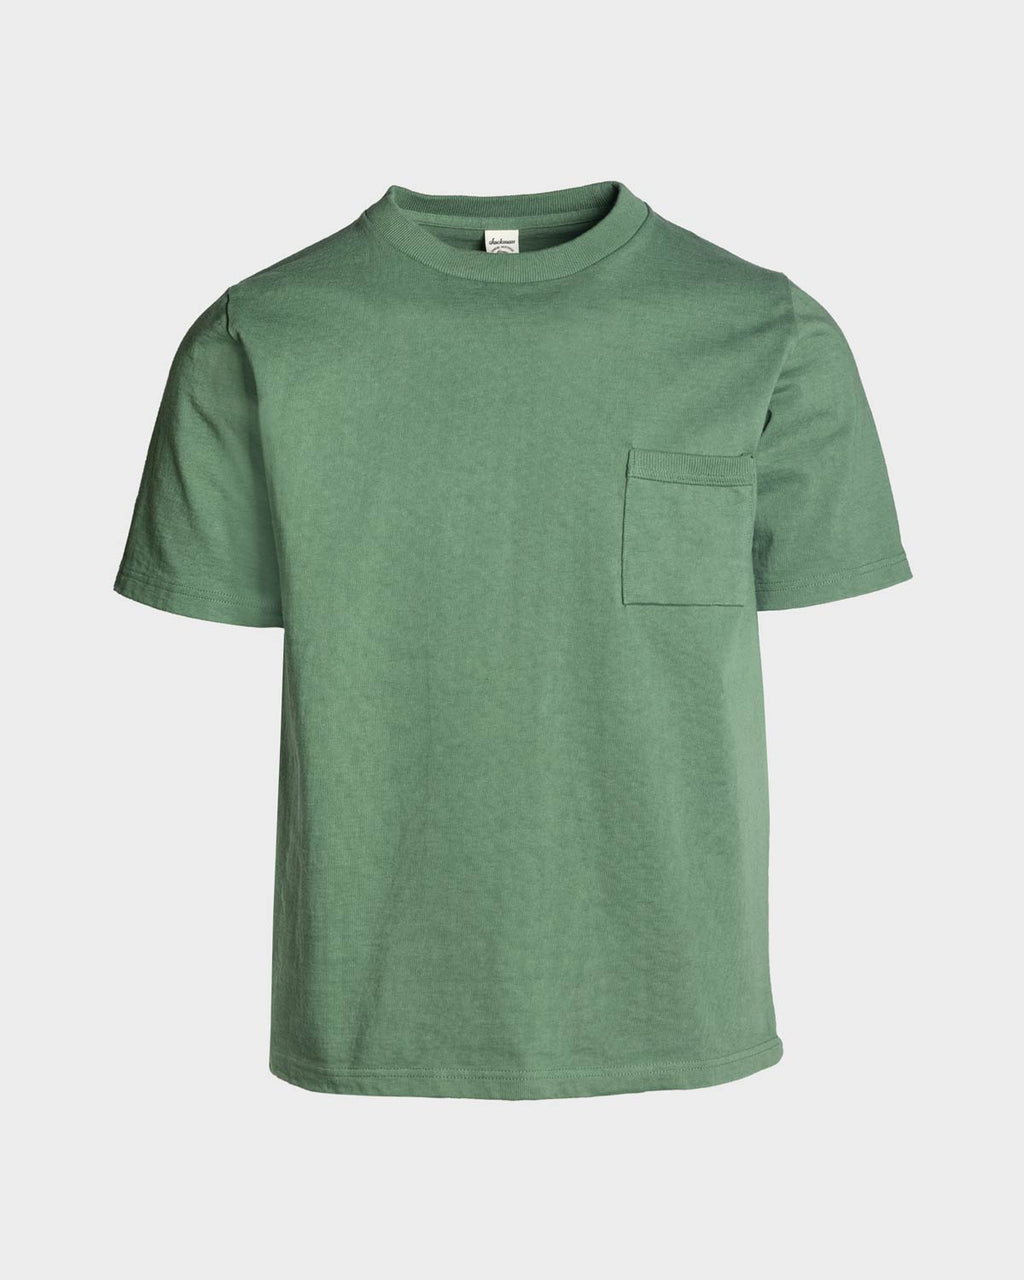 Jackman Dotsume Pocket T-Shirt - Ash Green – The 5th Store